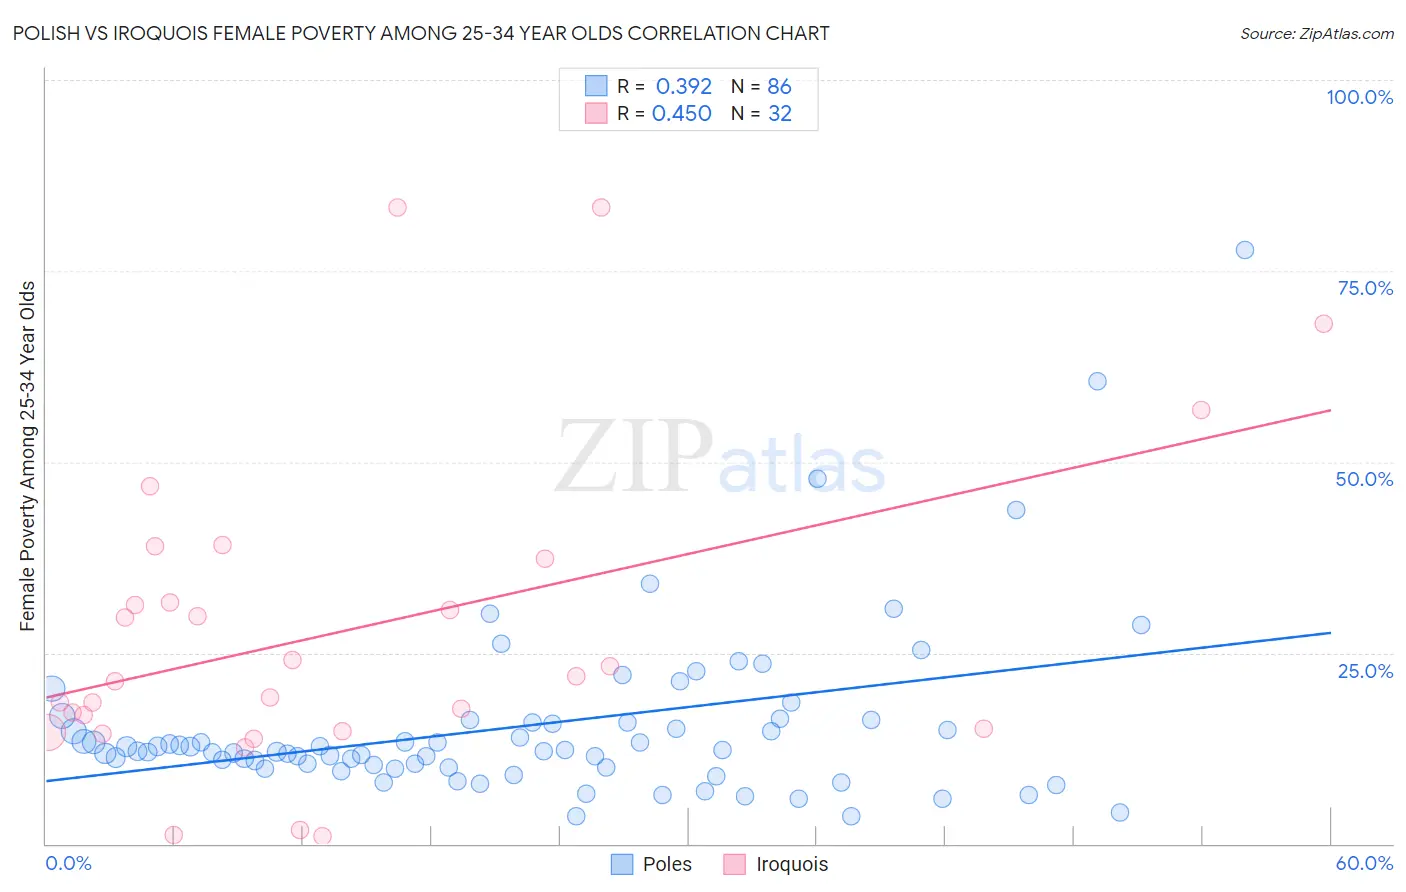 Polish vs Iroquois Female Poverty Among 25-34 Year Olds